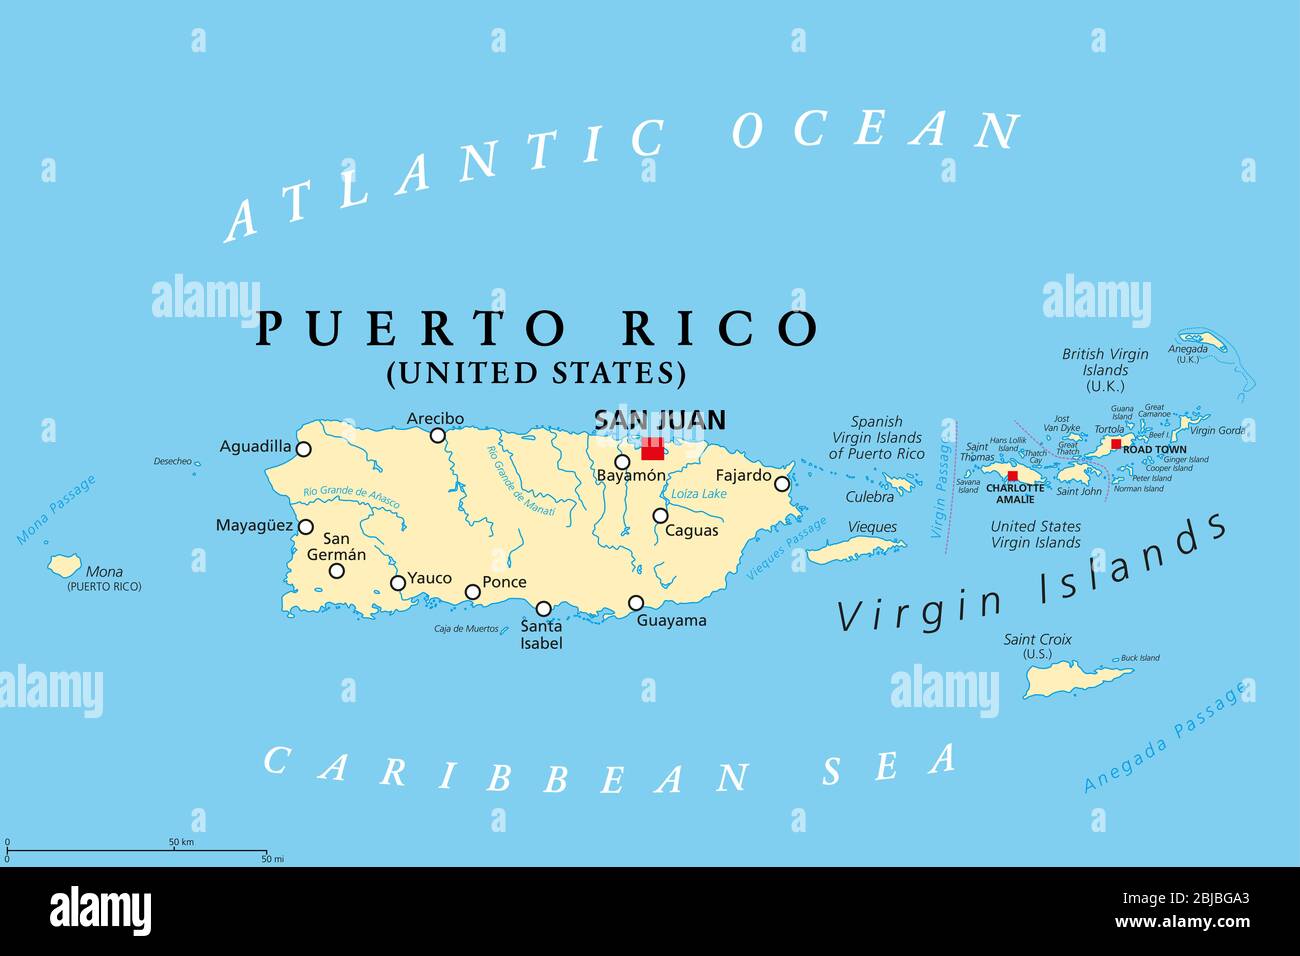 Confiar recursos humanos calcular Puerto Rico e Islas Vírgenes, mapa político. Islas Vírgenes Británicas,  española y de los Estados Unidos Fotografía de stock - Alamy